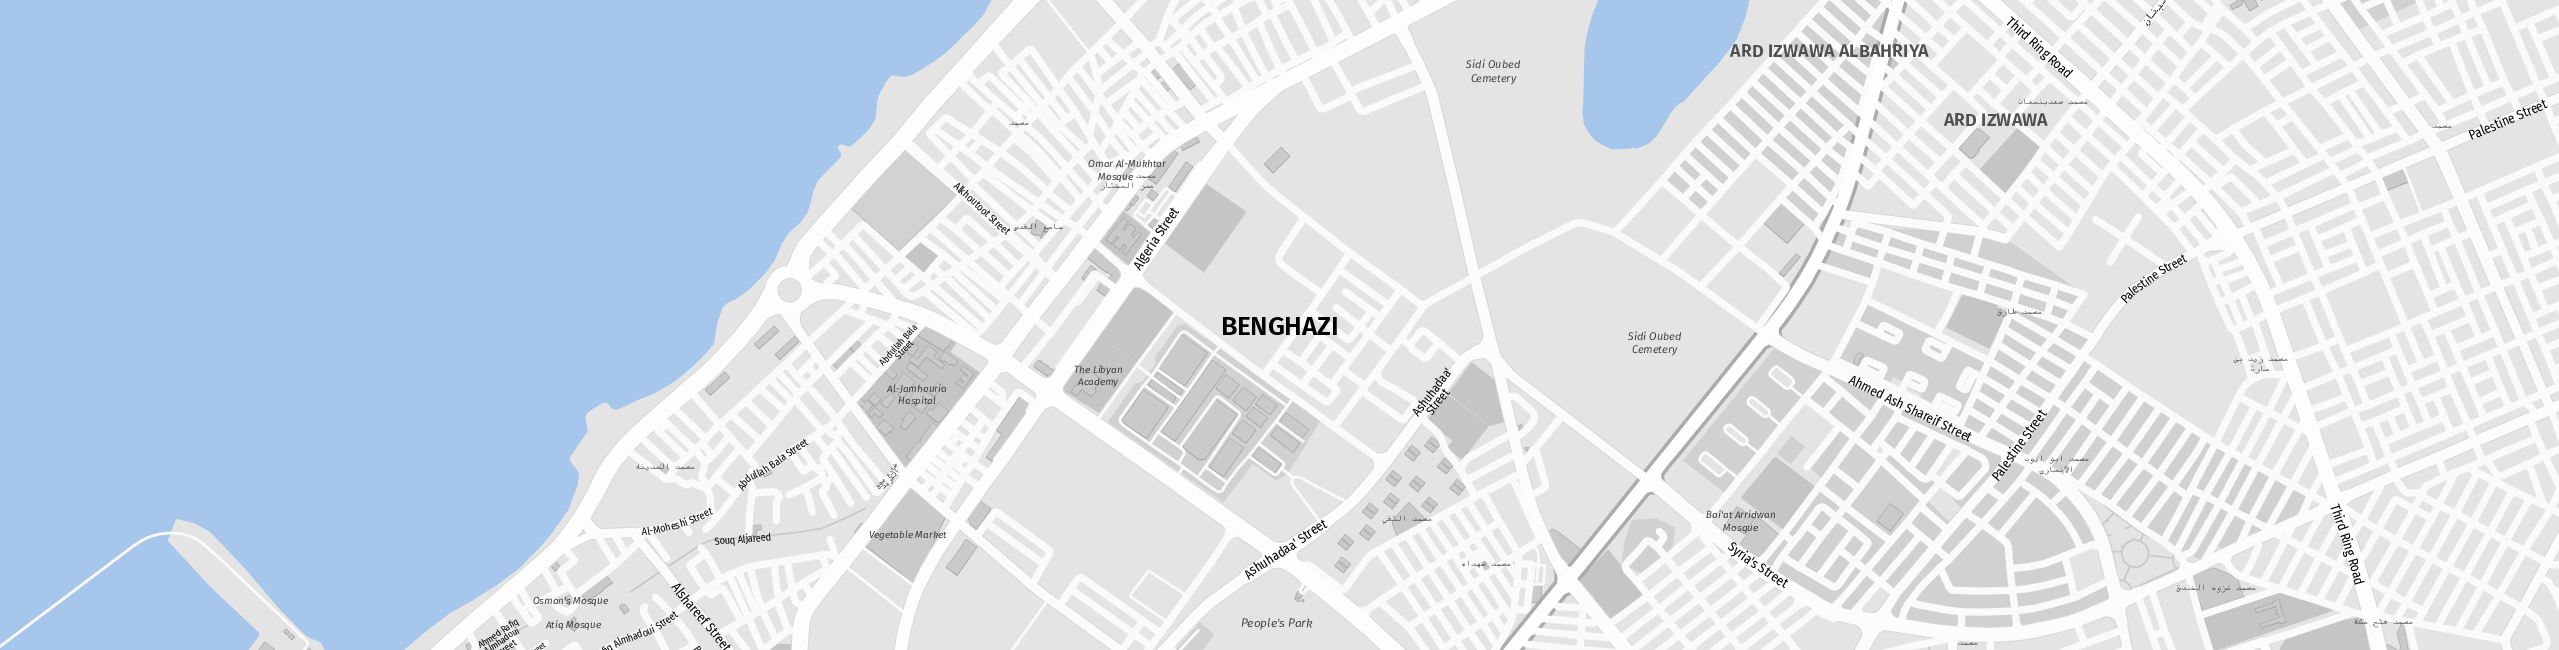 Stadtplan Bengasi zum Downloaden.